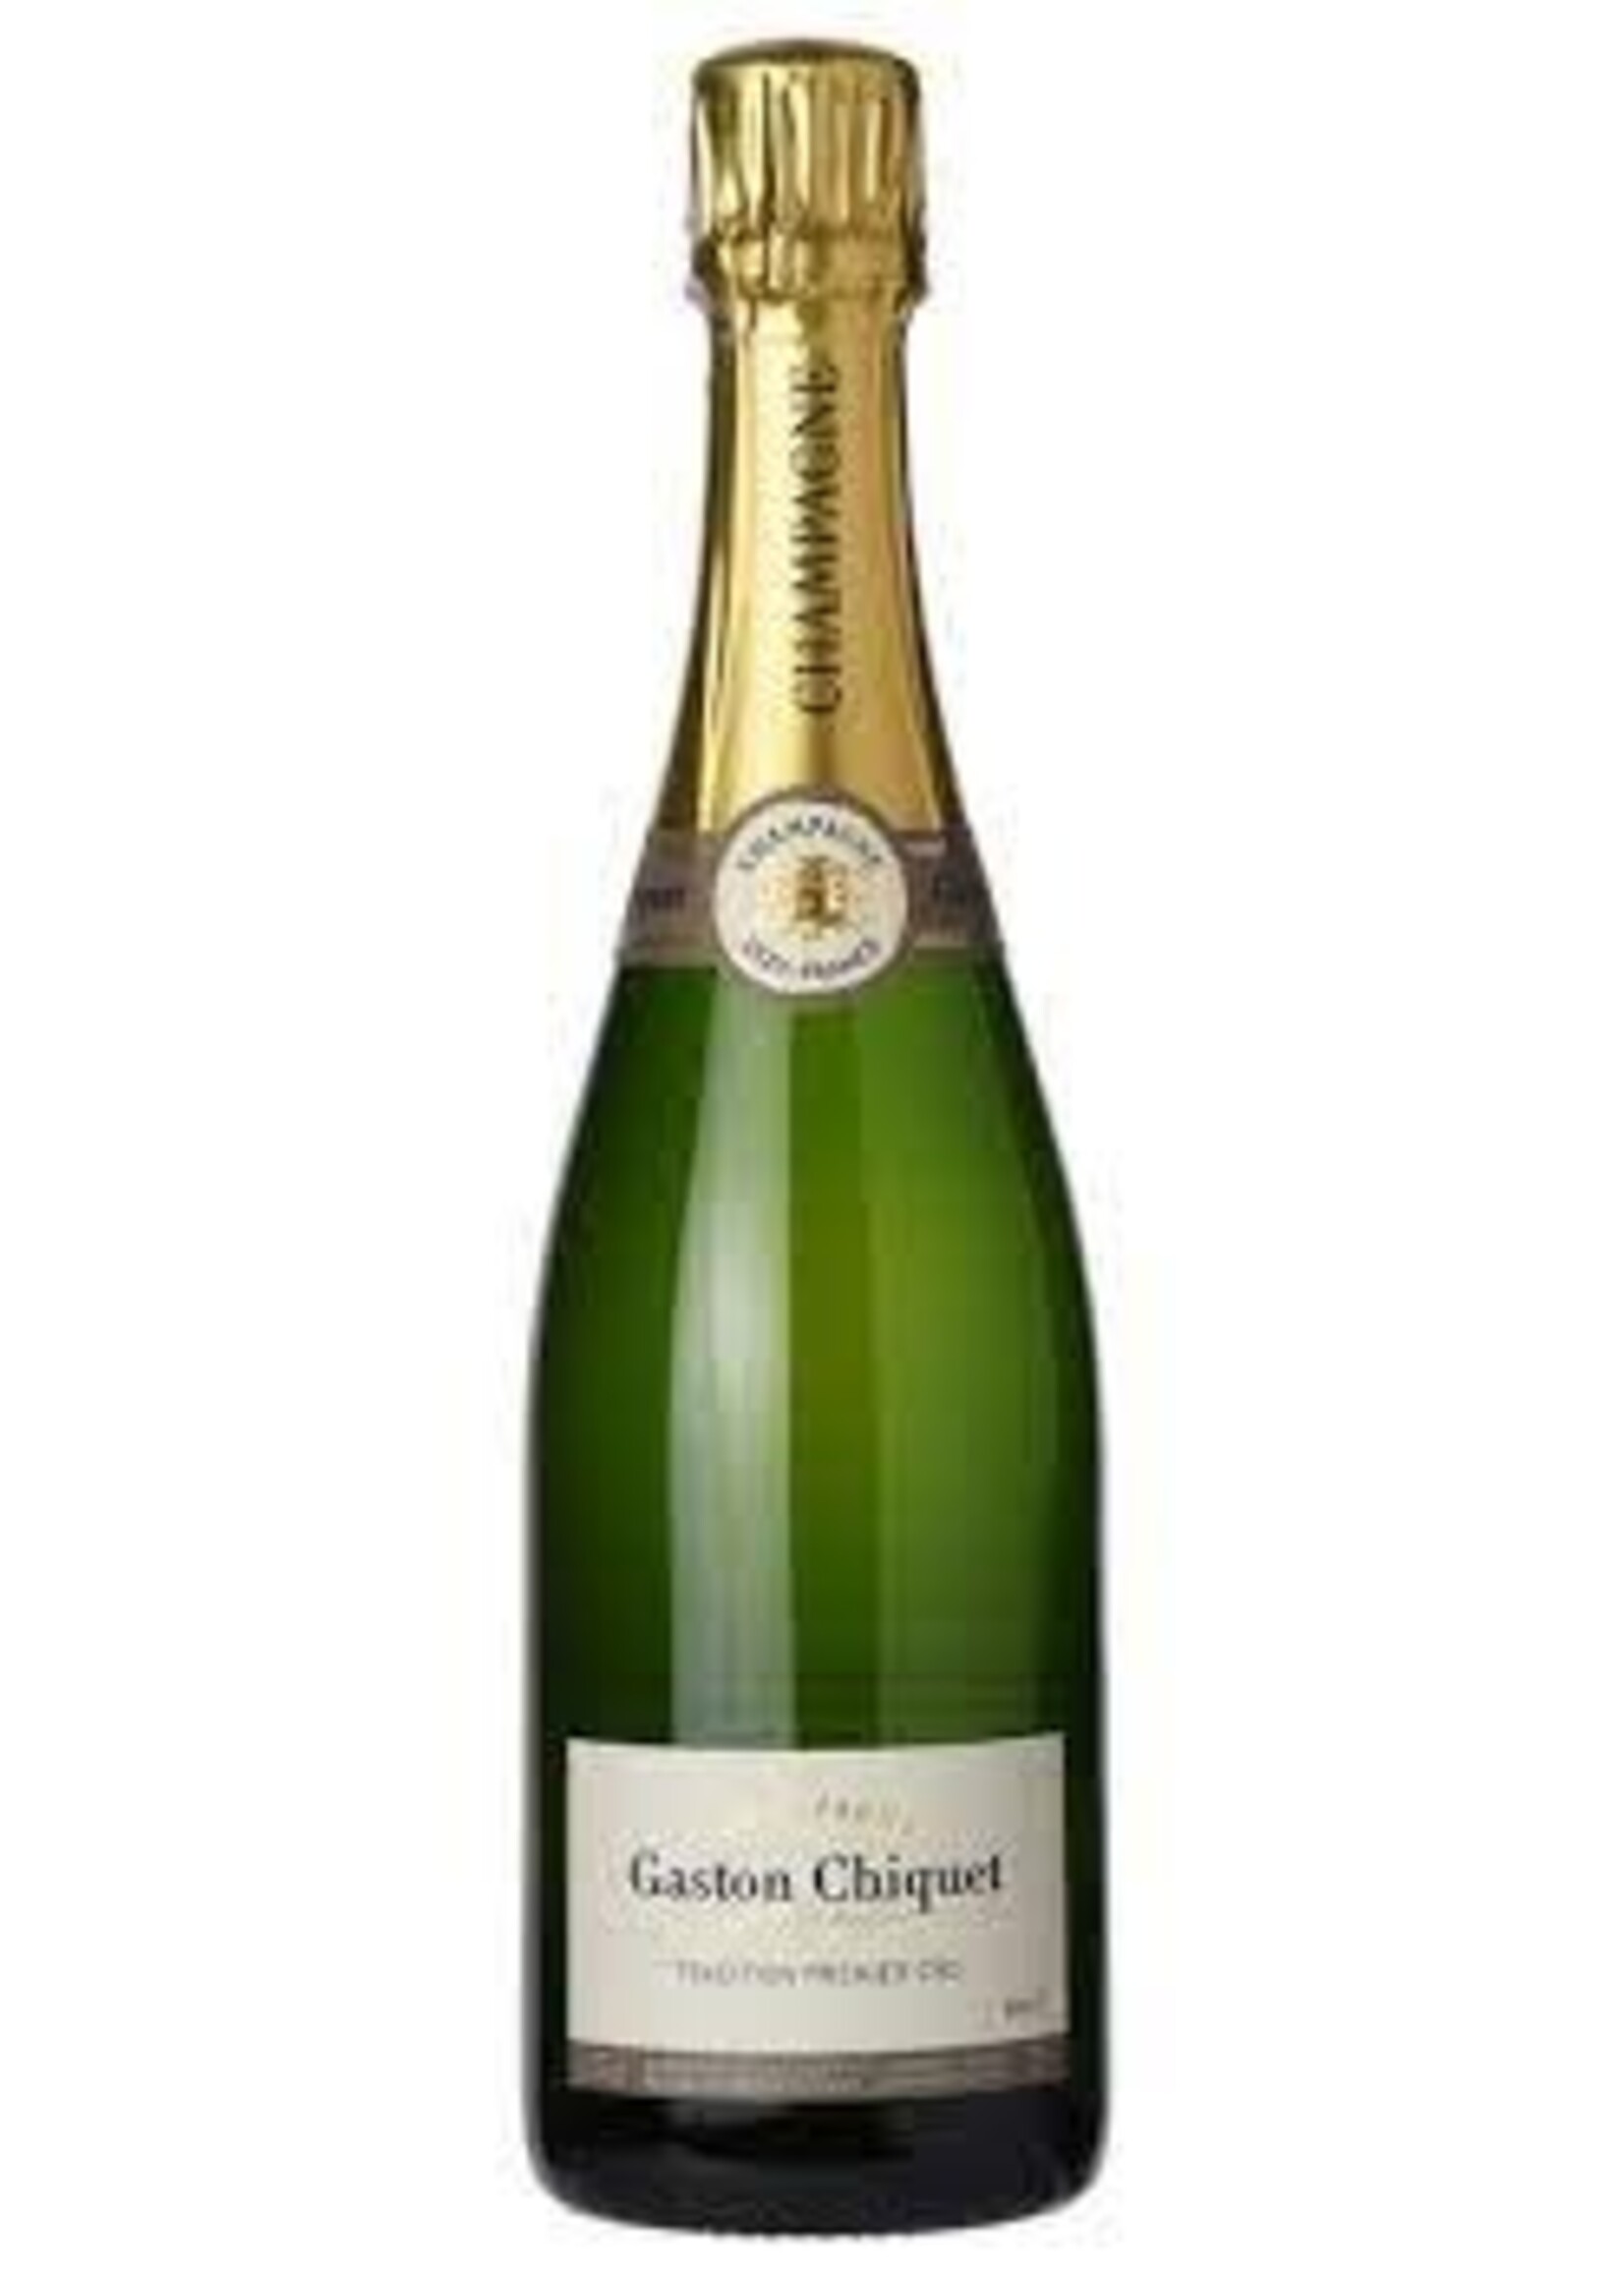 Gaston Chiquet Gaston Chiquet Tradition Brut Champagne